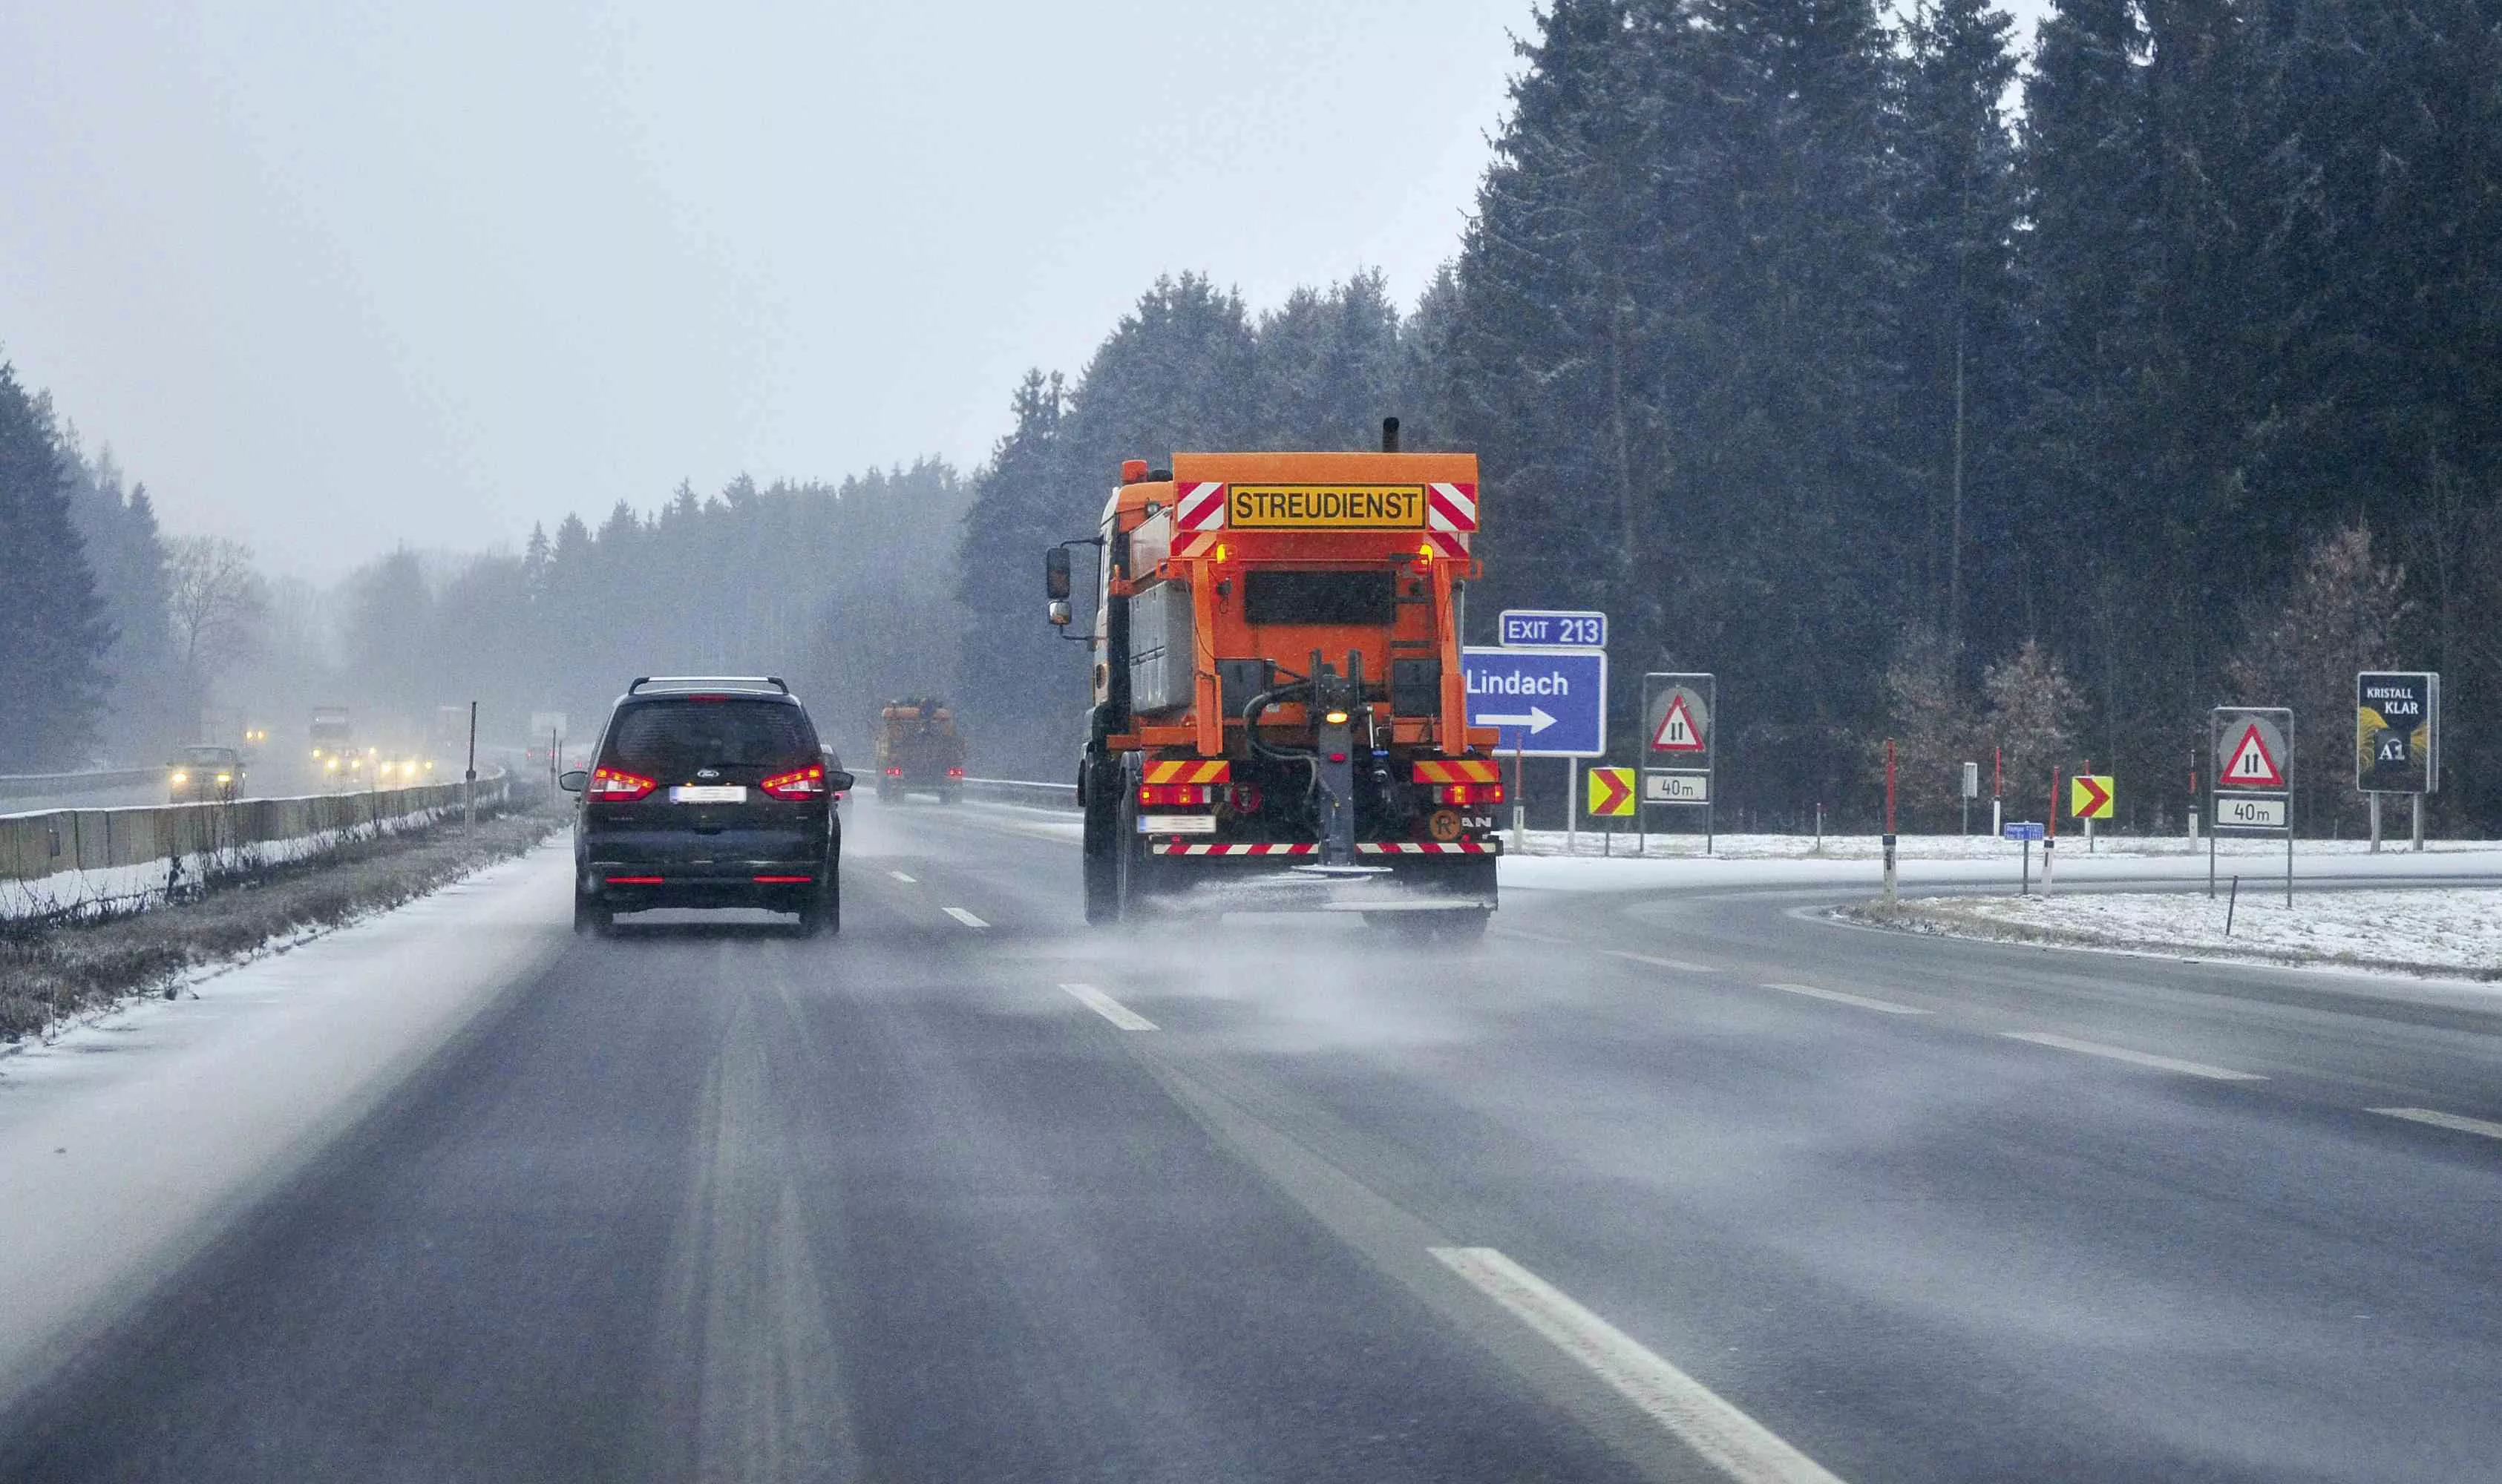 Aufnahme eines fahrenden ASFINAG Streudienst-Fahrzeugs im Einsatz auf der Autobahn.